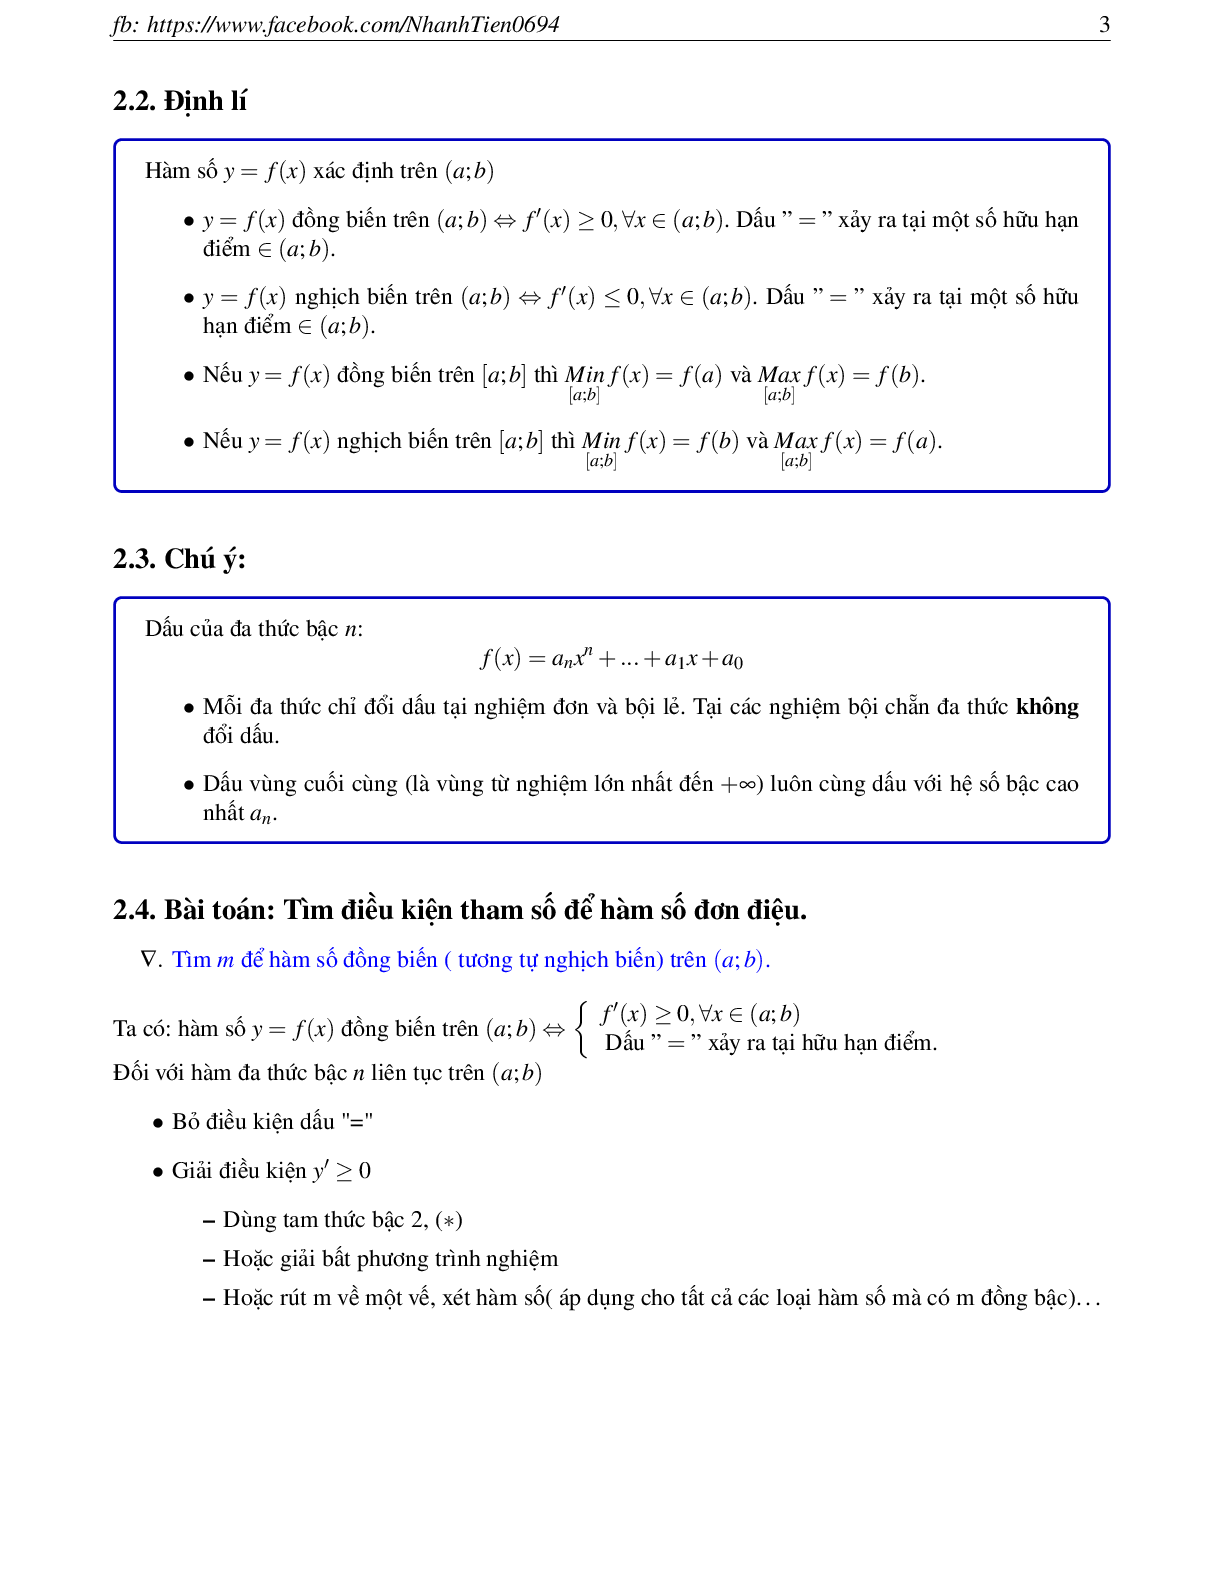 Phương pháp giải chuyên đề Hàm số 2023 (lý thuyết và bài tập) (trang 3)